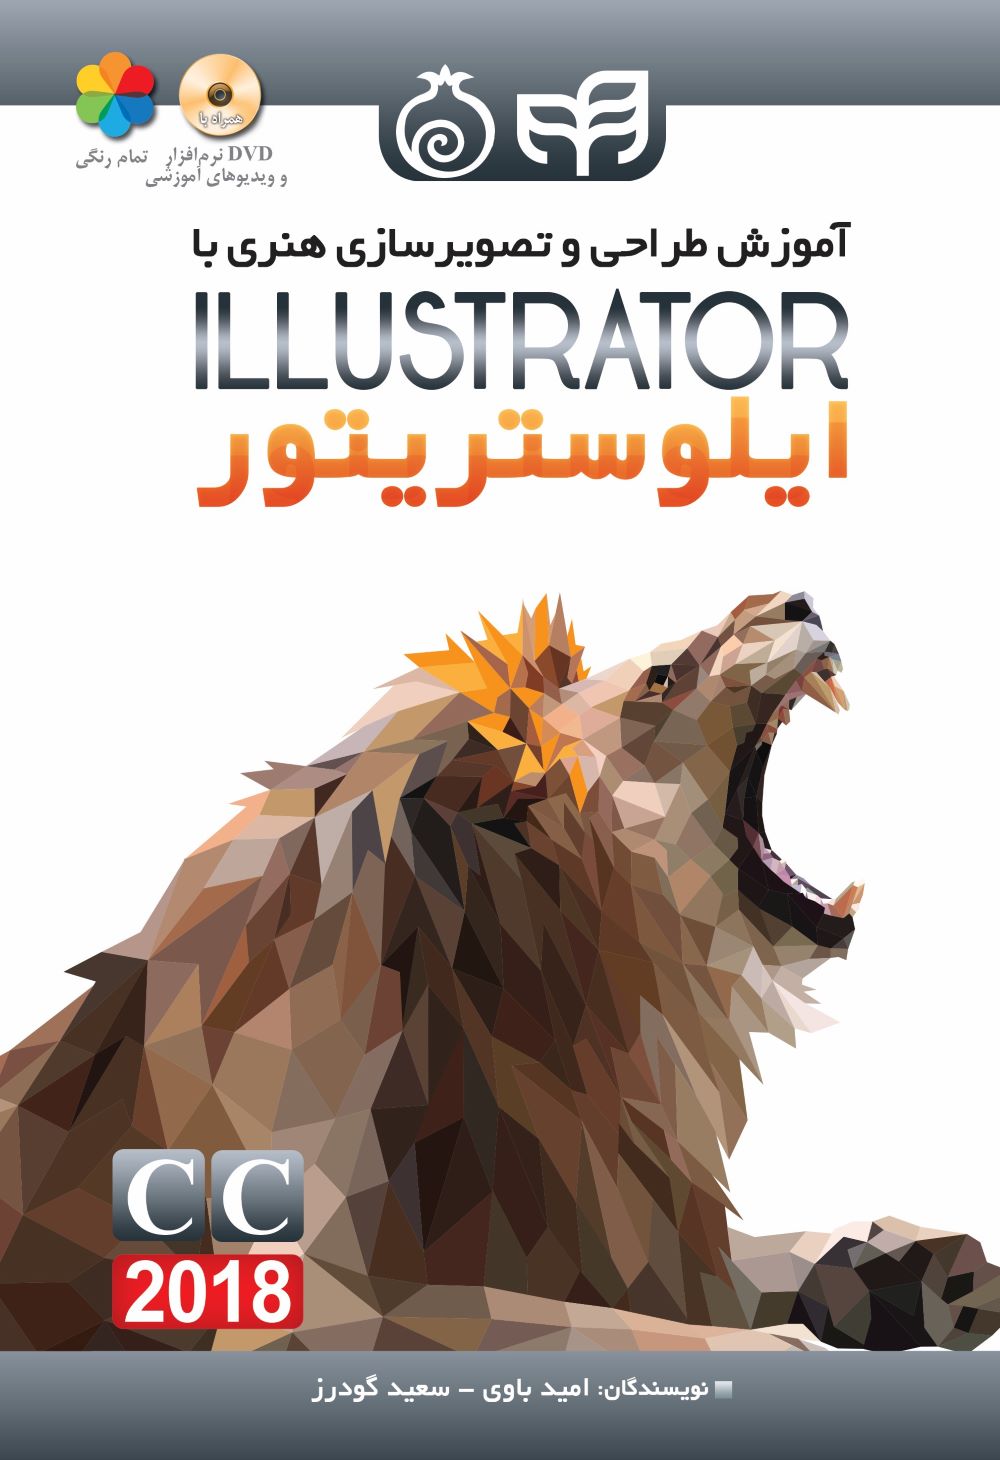  خريد کتاب  آموزش طراحی و تصویرسازی هنری با Adobe illustrator CC2018